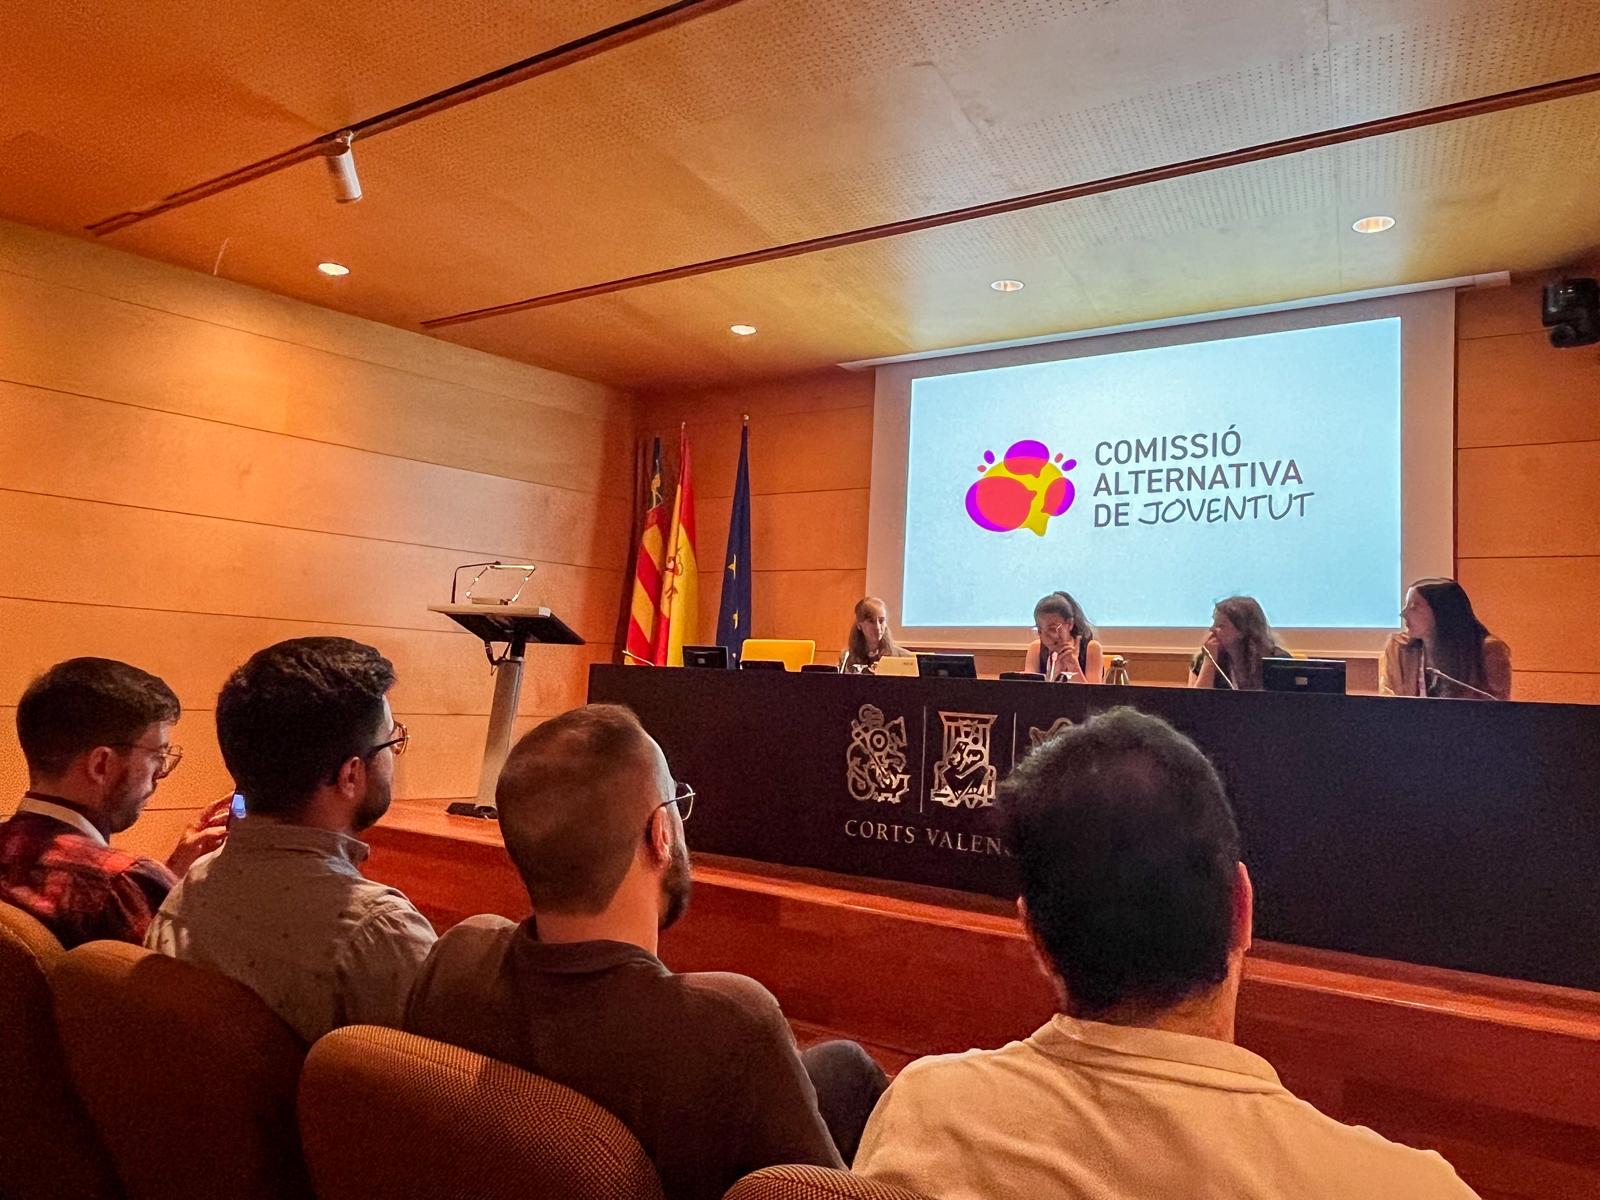 You are currently viewing El PSPV-PSOE crea una comissió alternativa de joventut en Les Corts perquè entitats juvenils prenguen el lideratge davant “la inacció i nul·la execució de Mazón”